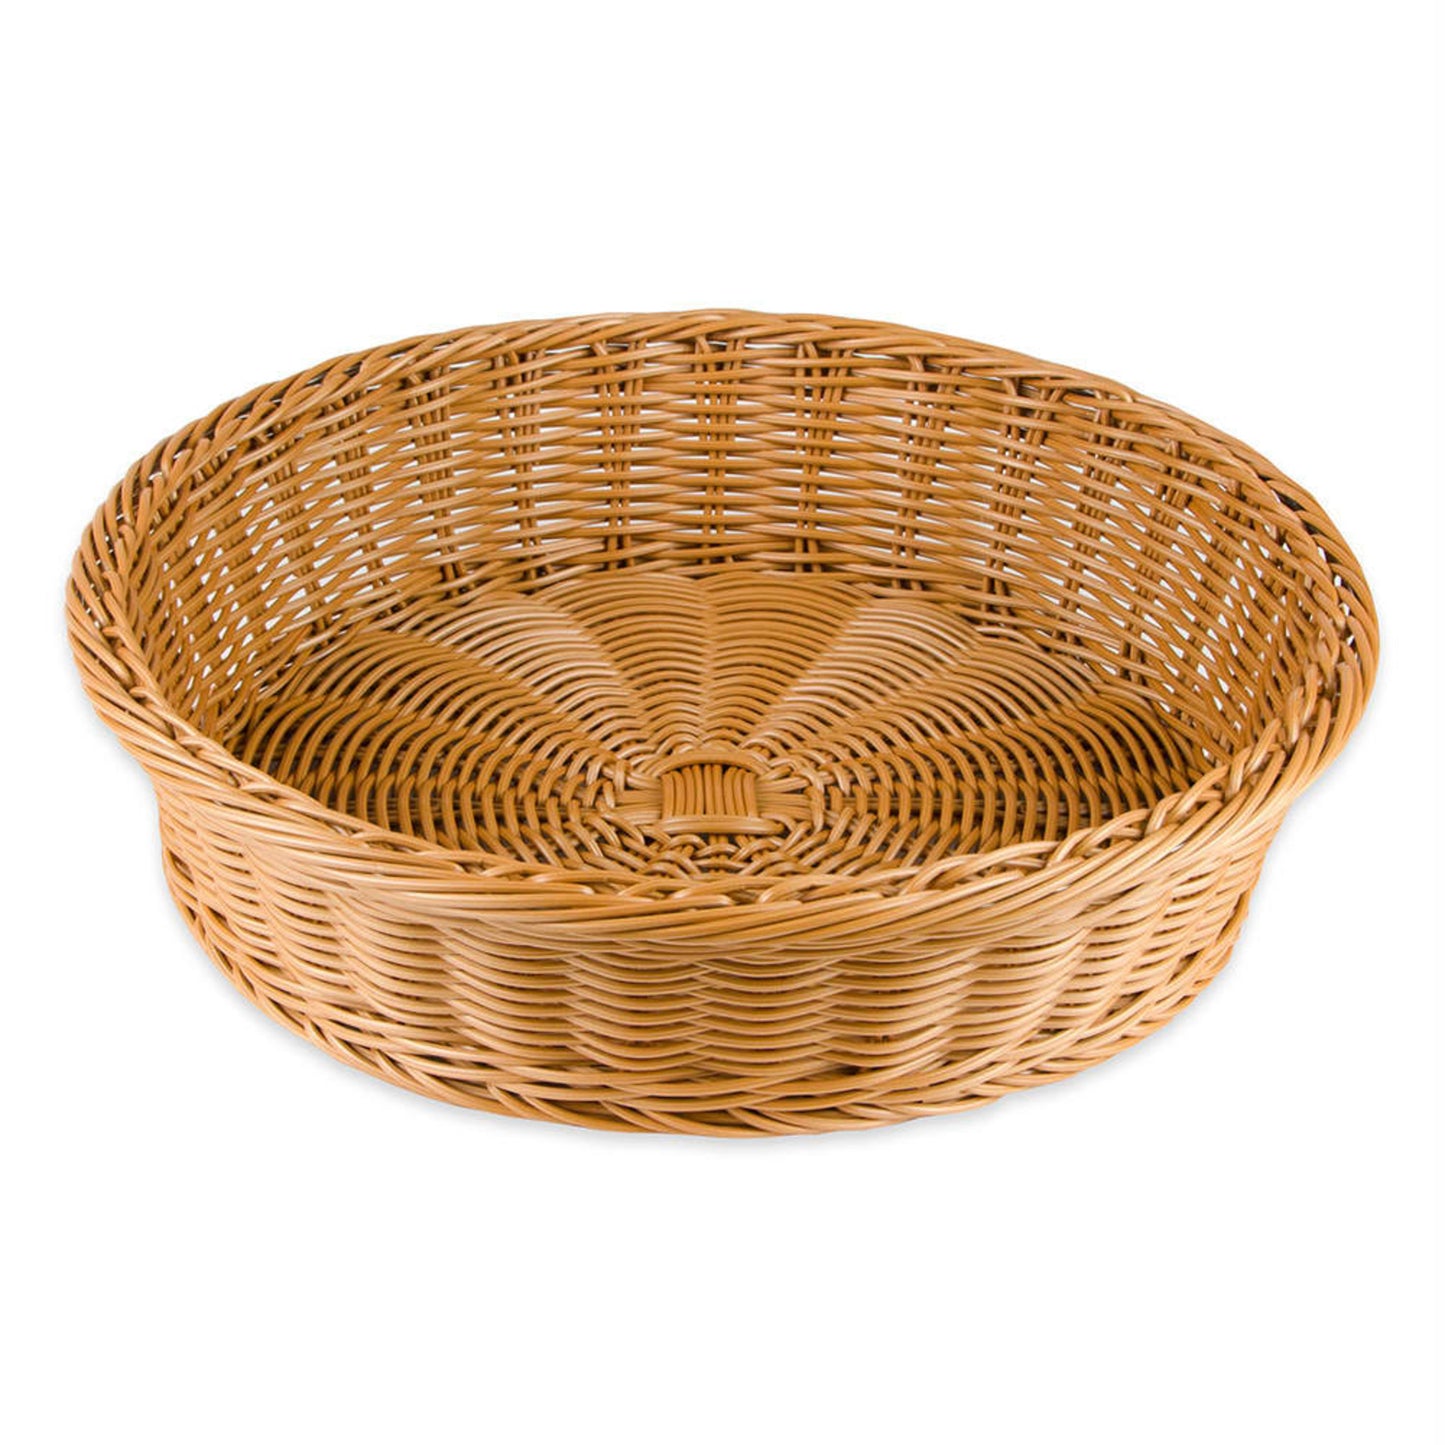 15.5" Round Basket, 4.25" Deep